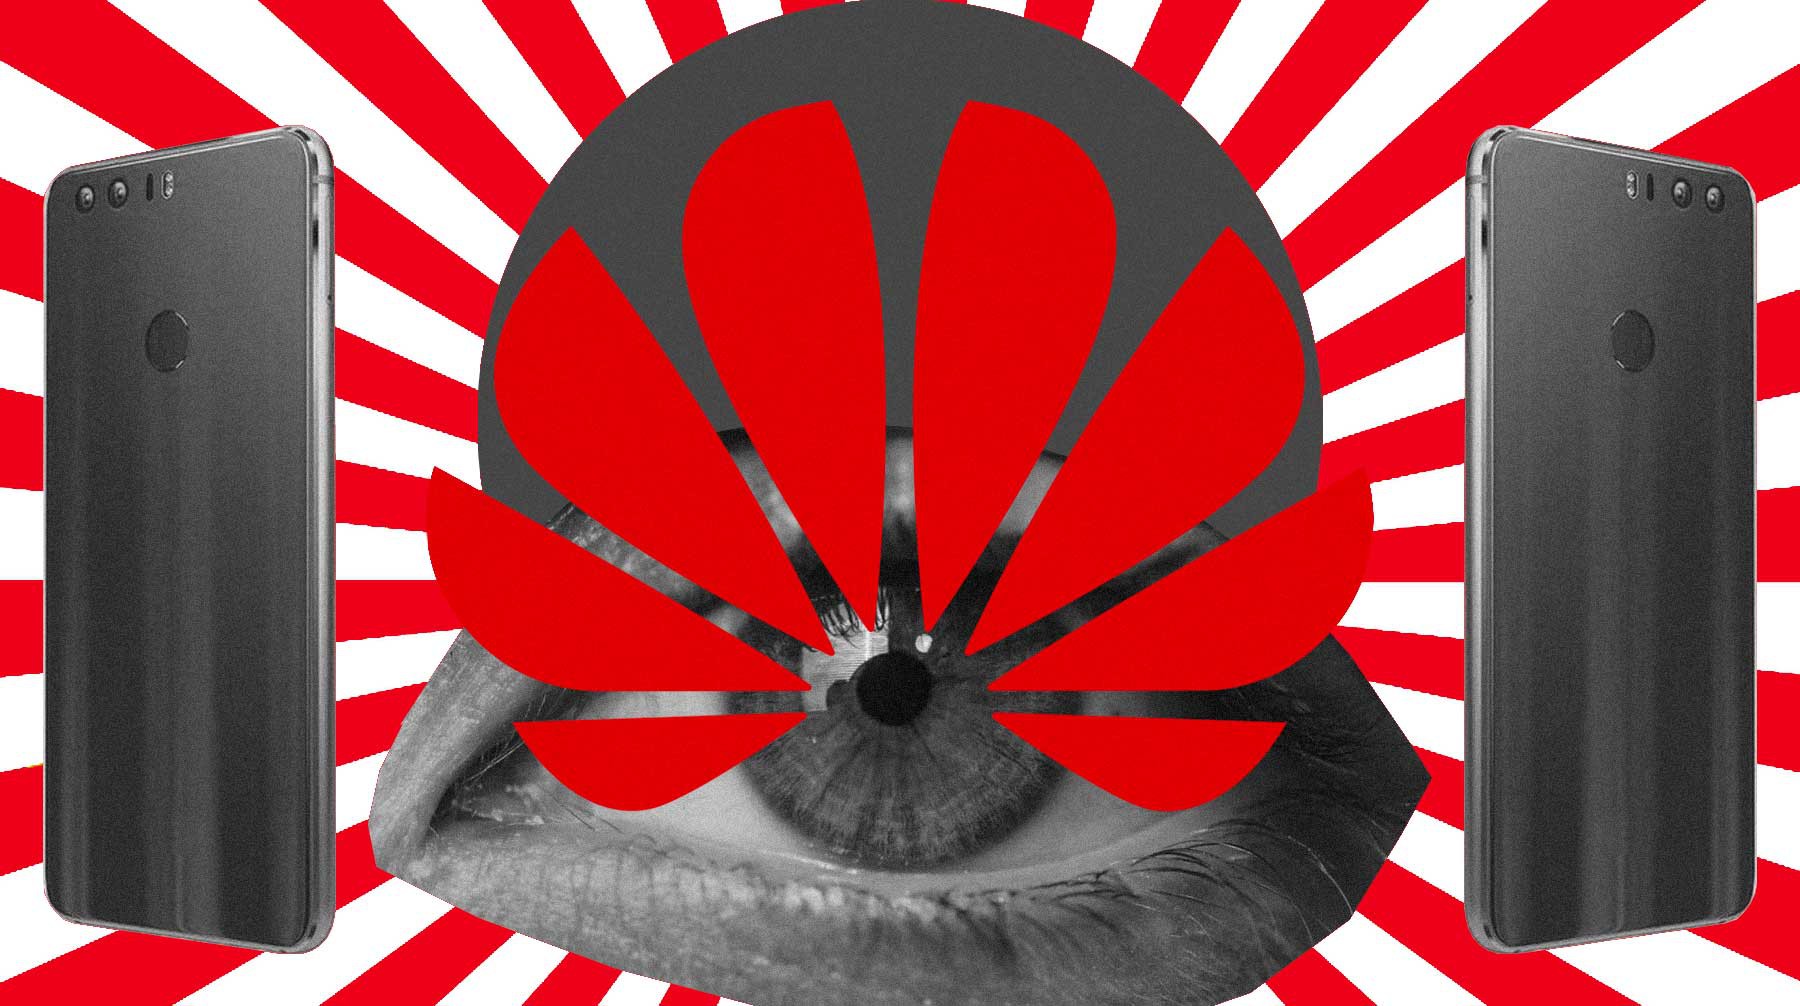 Dailystorm - США обвиняют Huawei в шпионаже. Рассказываем о том, как гаджеты могут следить за пользователями и можно ли от этого защититься